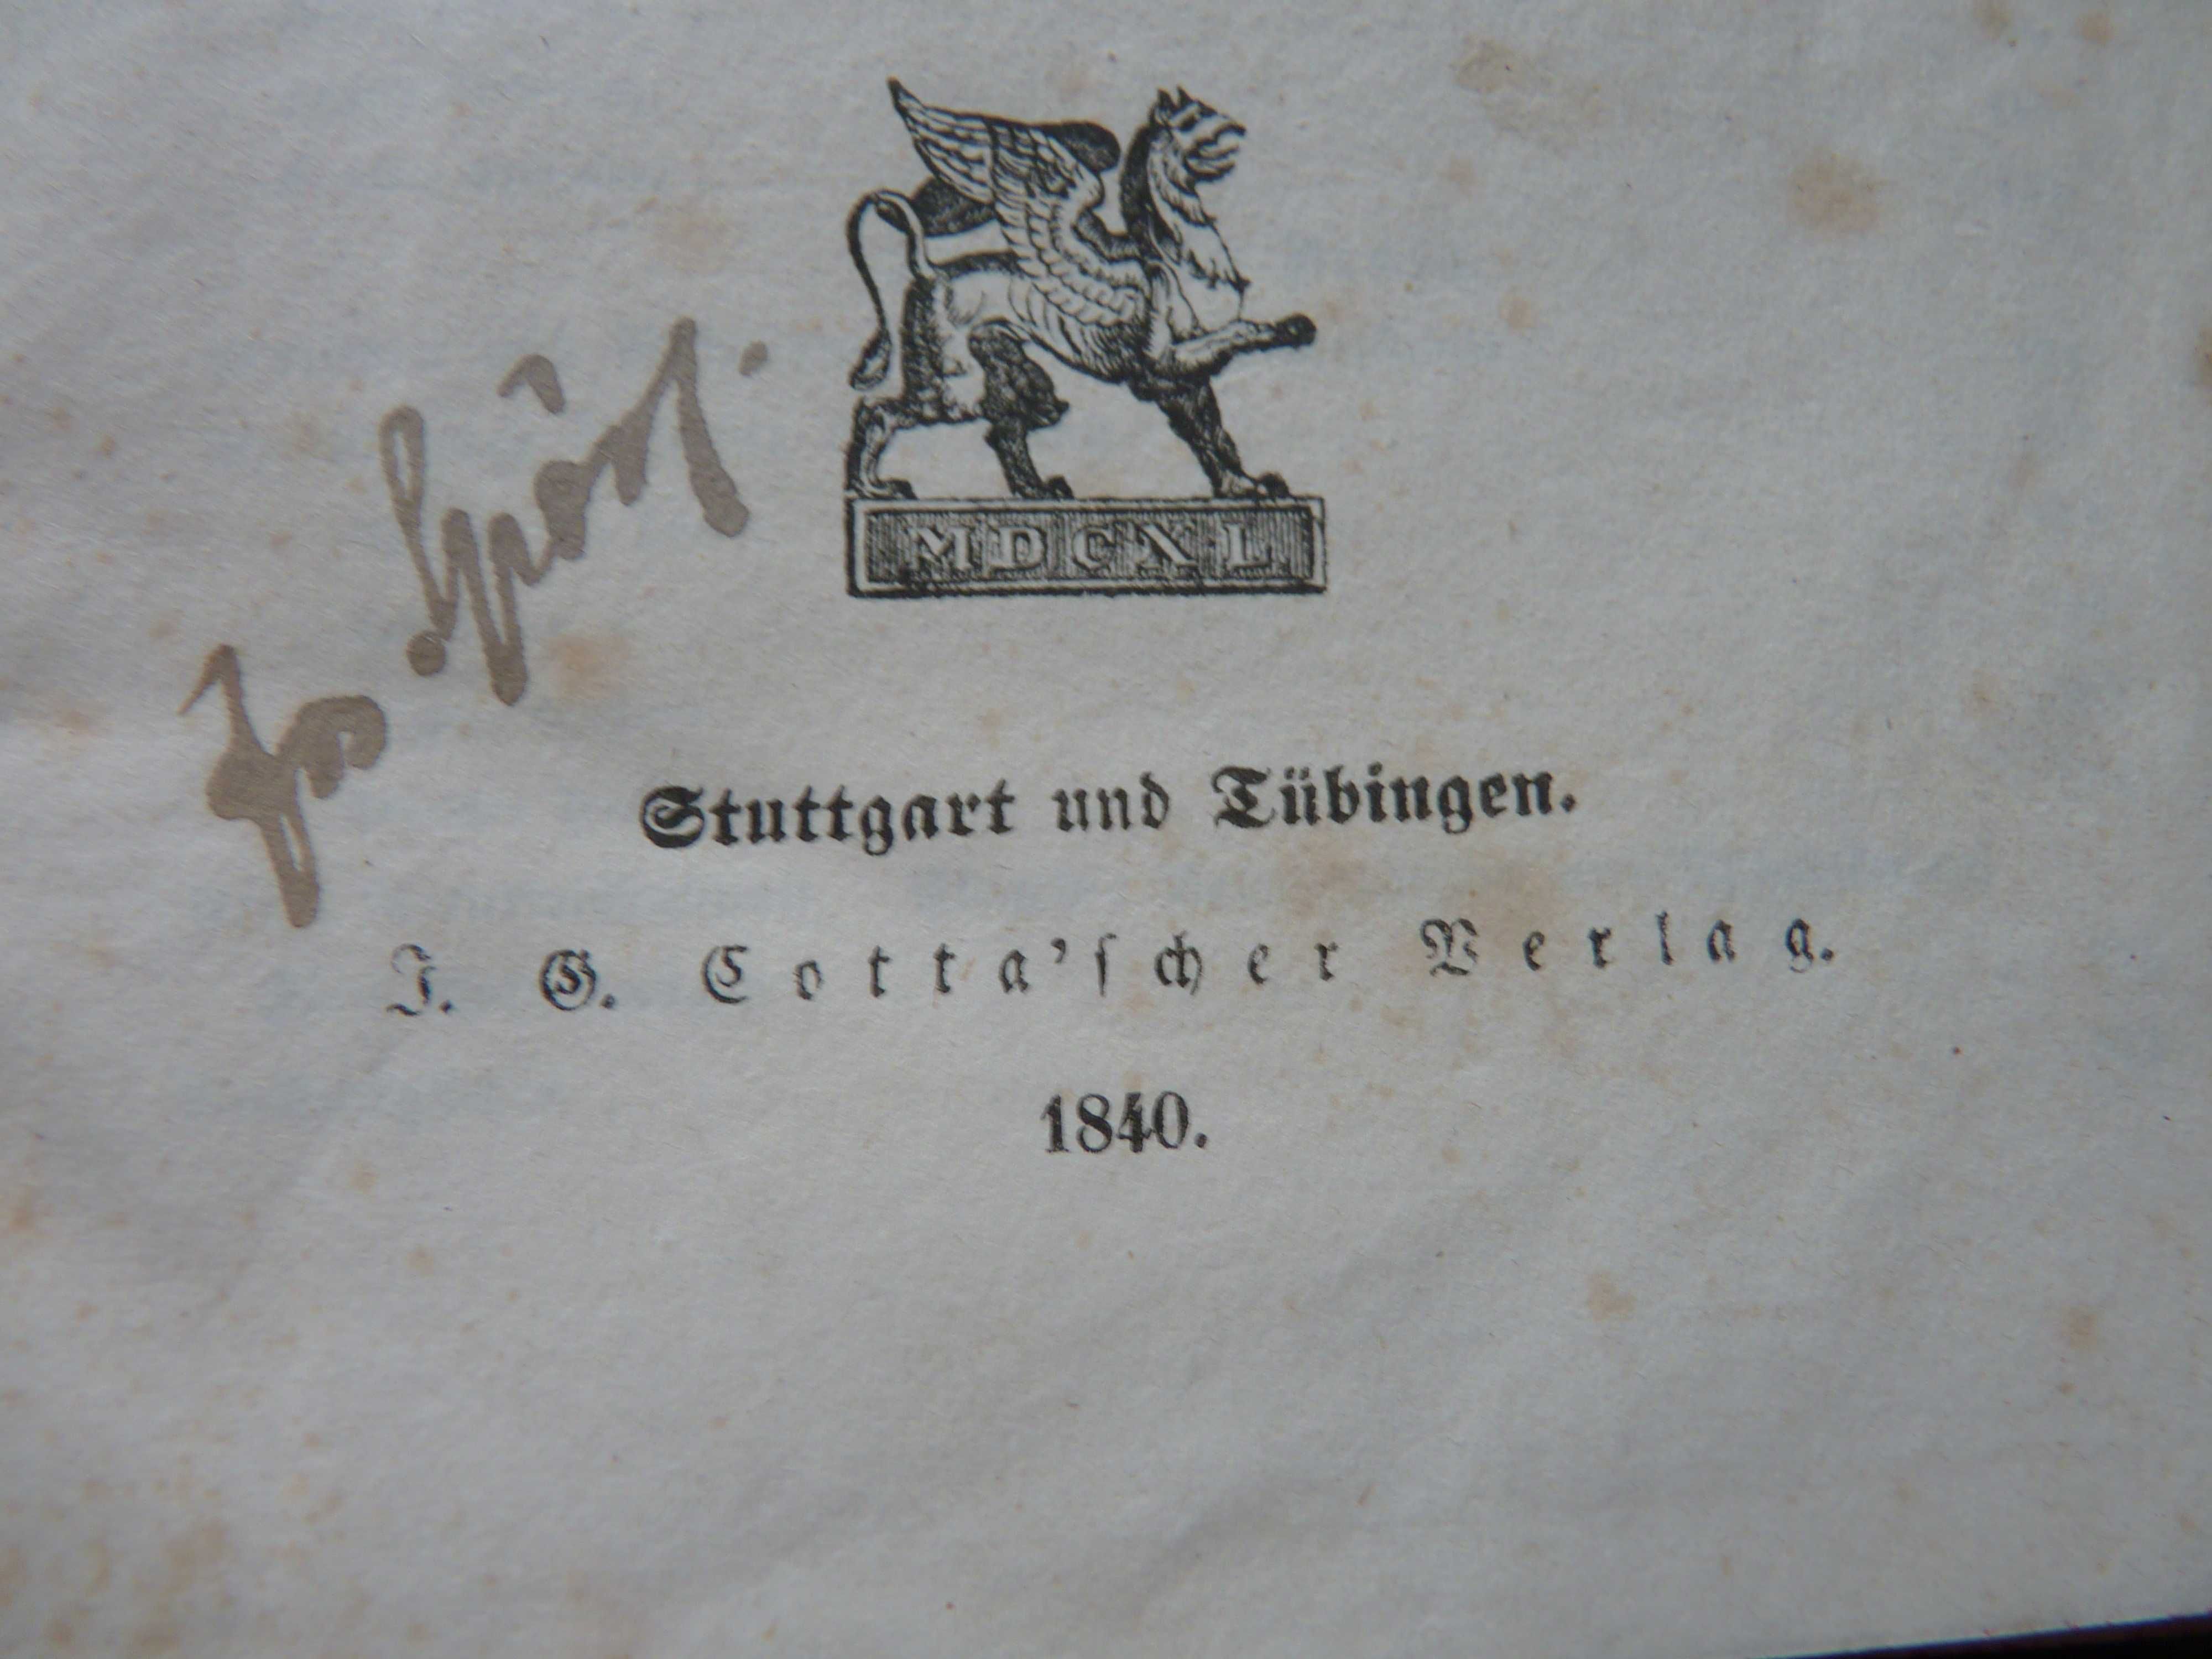 Kompletne wydanie Goethe,s Werke z 1840 roku.